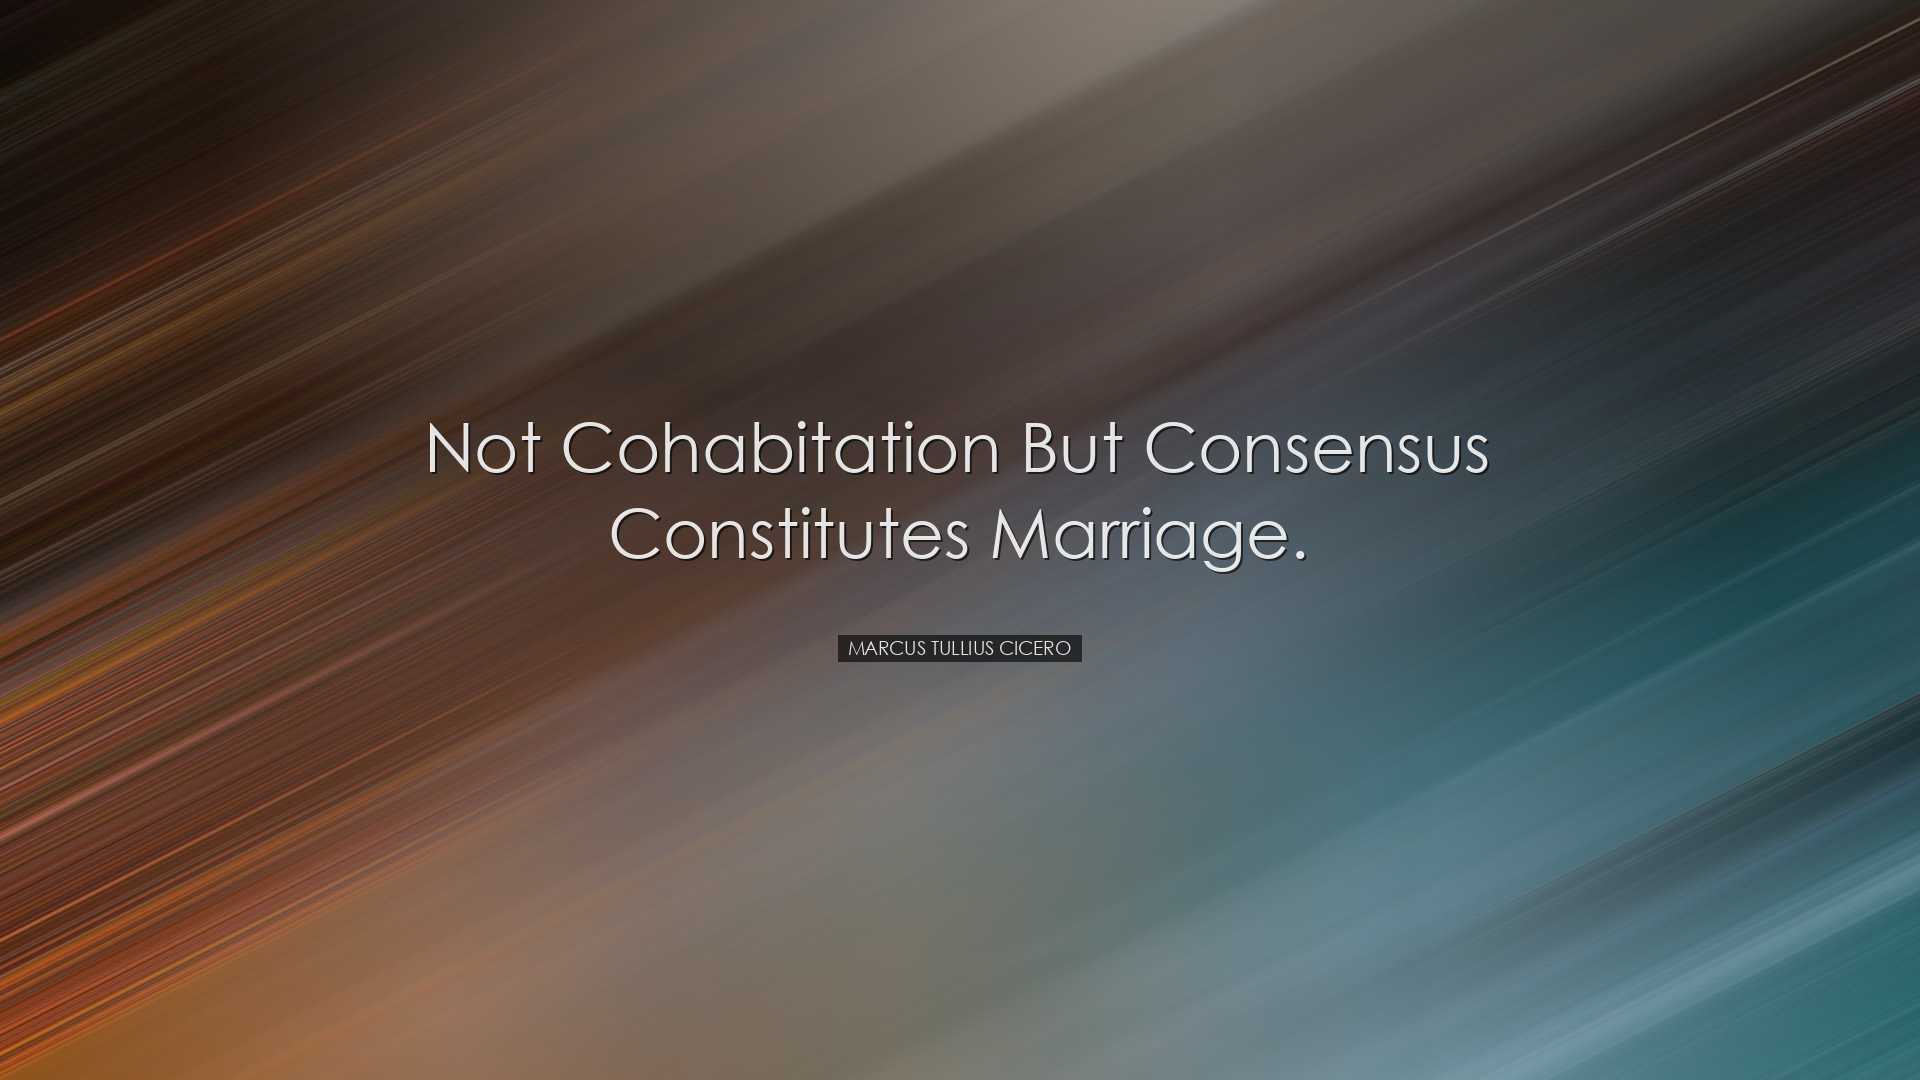 Not cohabitation but consensus constitutes marriage. - Marcus Tull